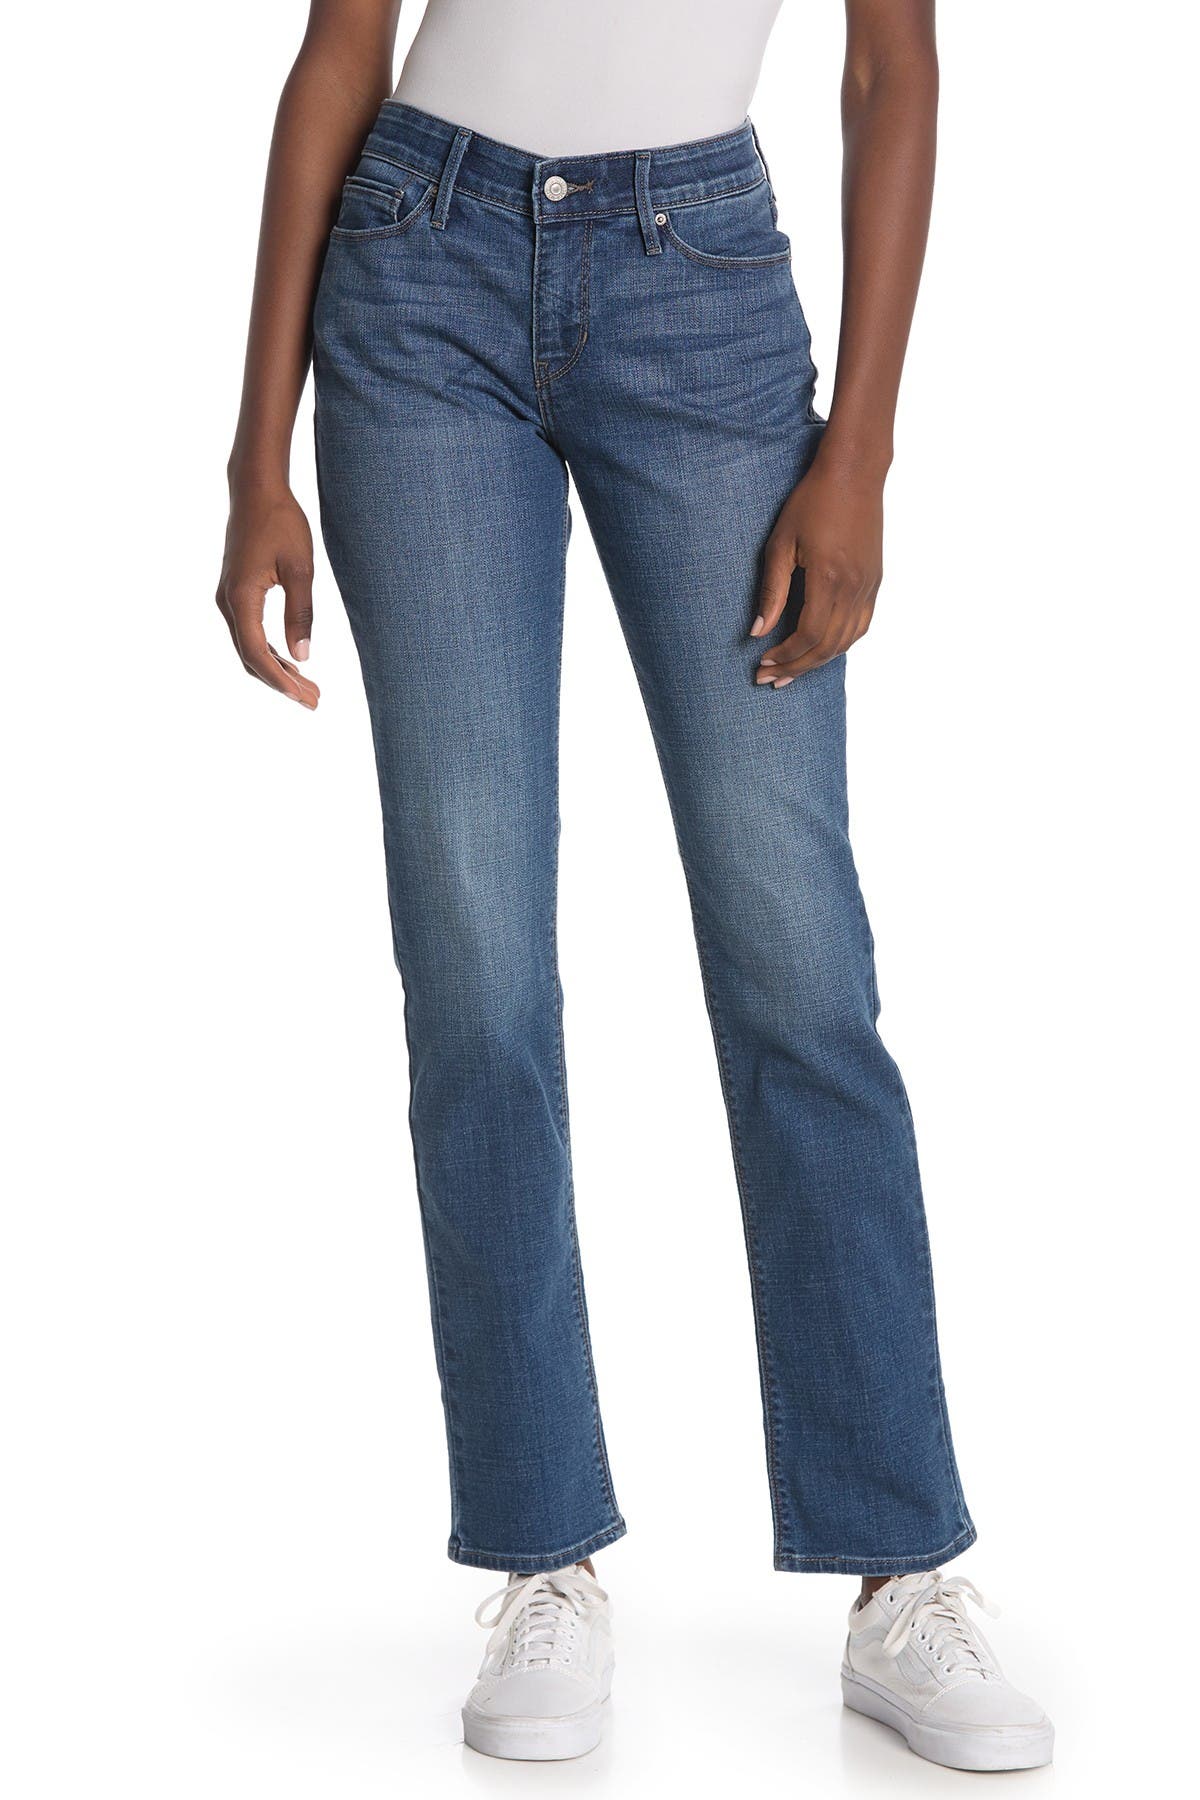 levis 525 jeans